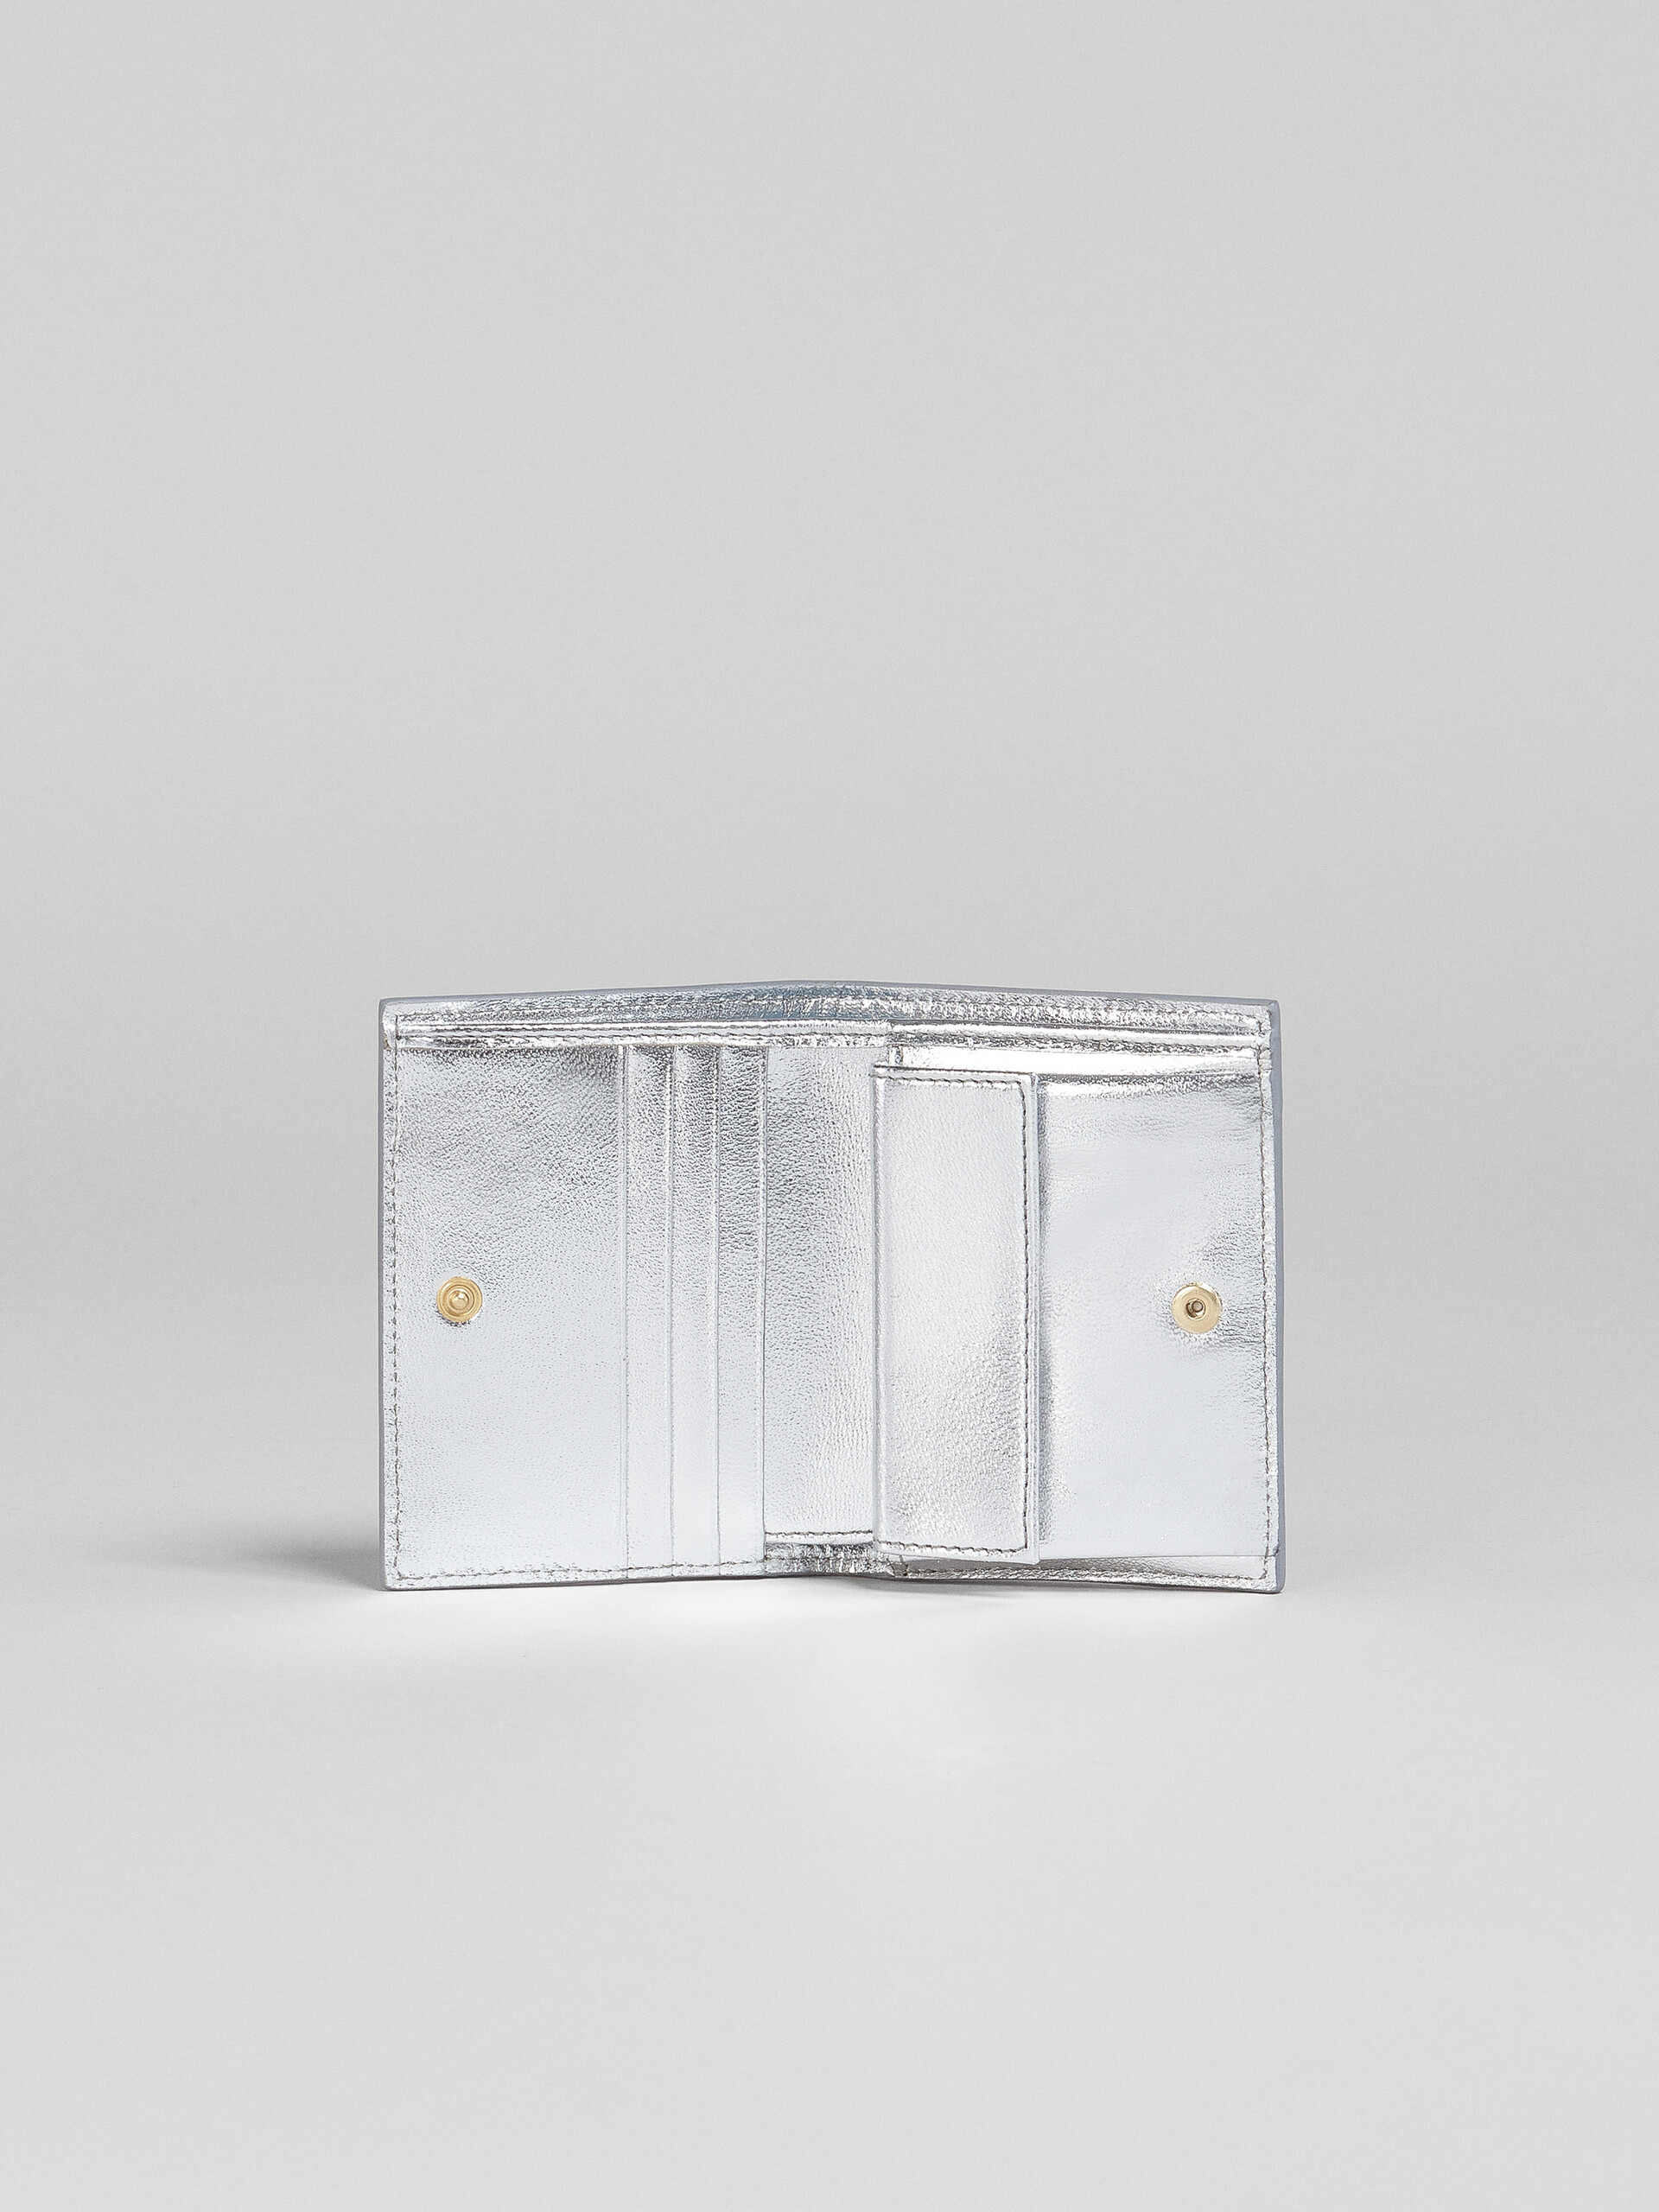 シルバーメタリック調 ナッパレザー二つ折りウォレット - 財布 - Image 2